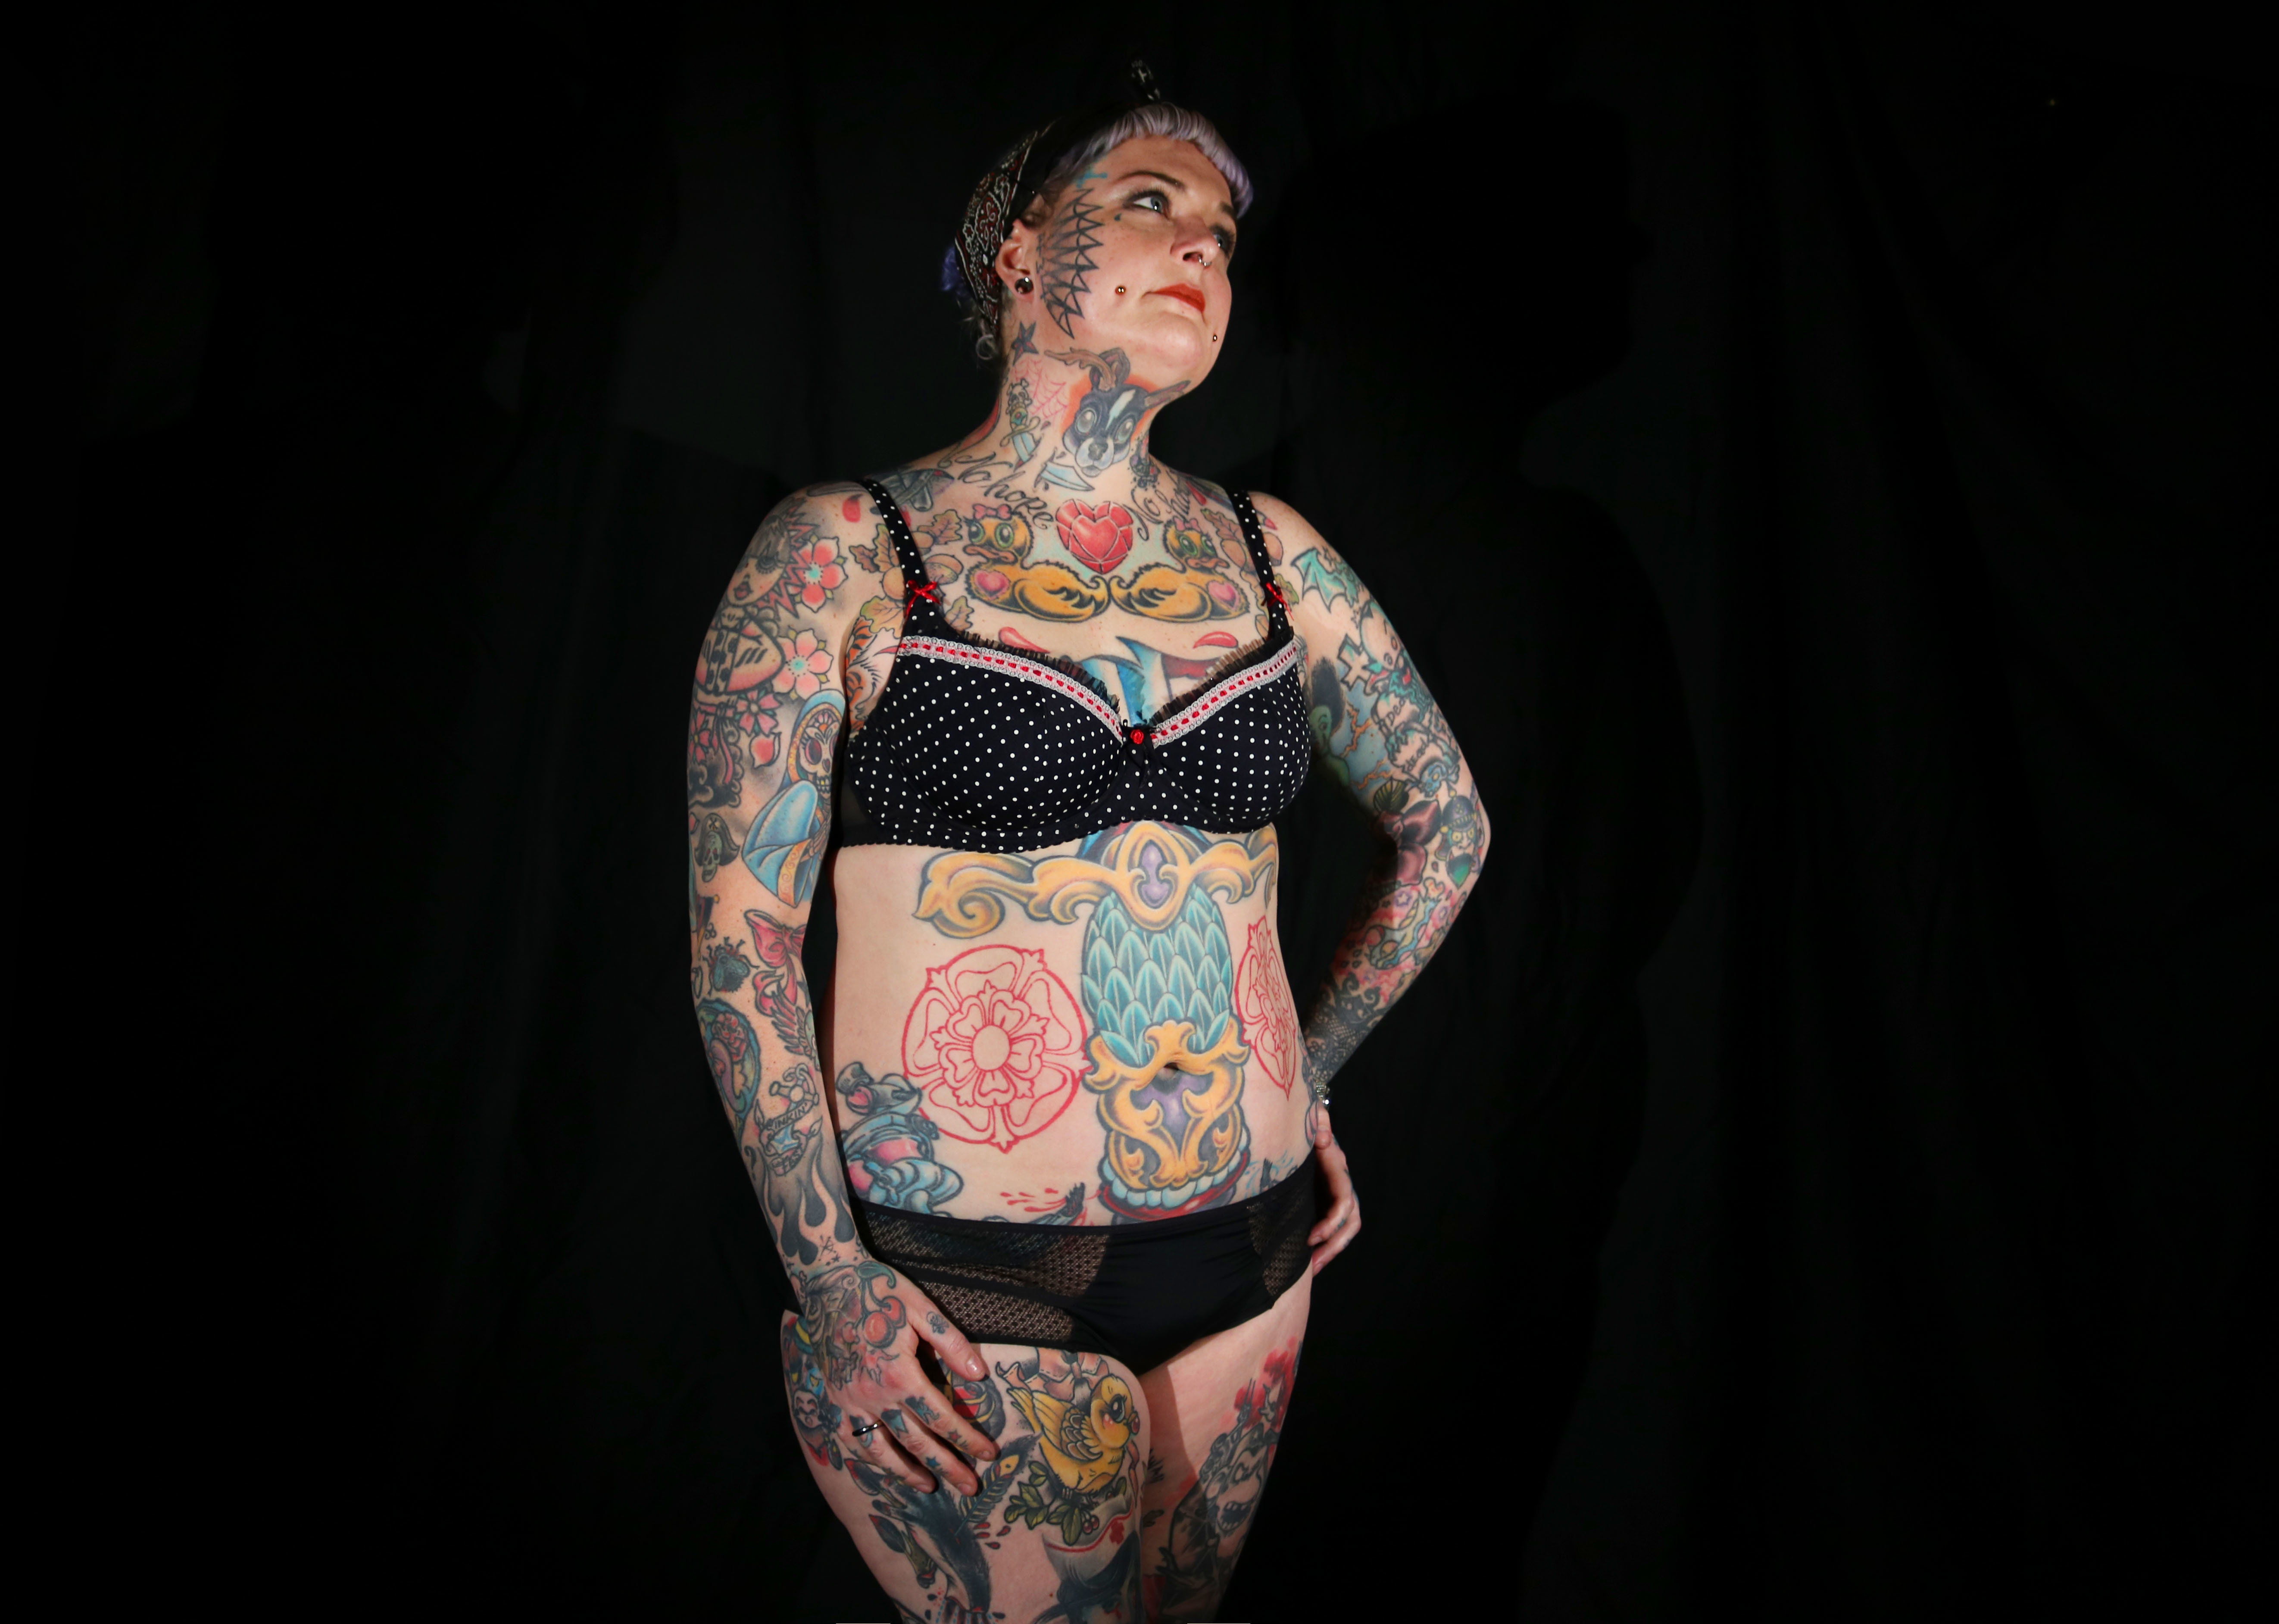 Thick tattooed - ðŸ§¡ Thick Tattooed Girls - Tattoo Ideas, Artists and Models...